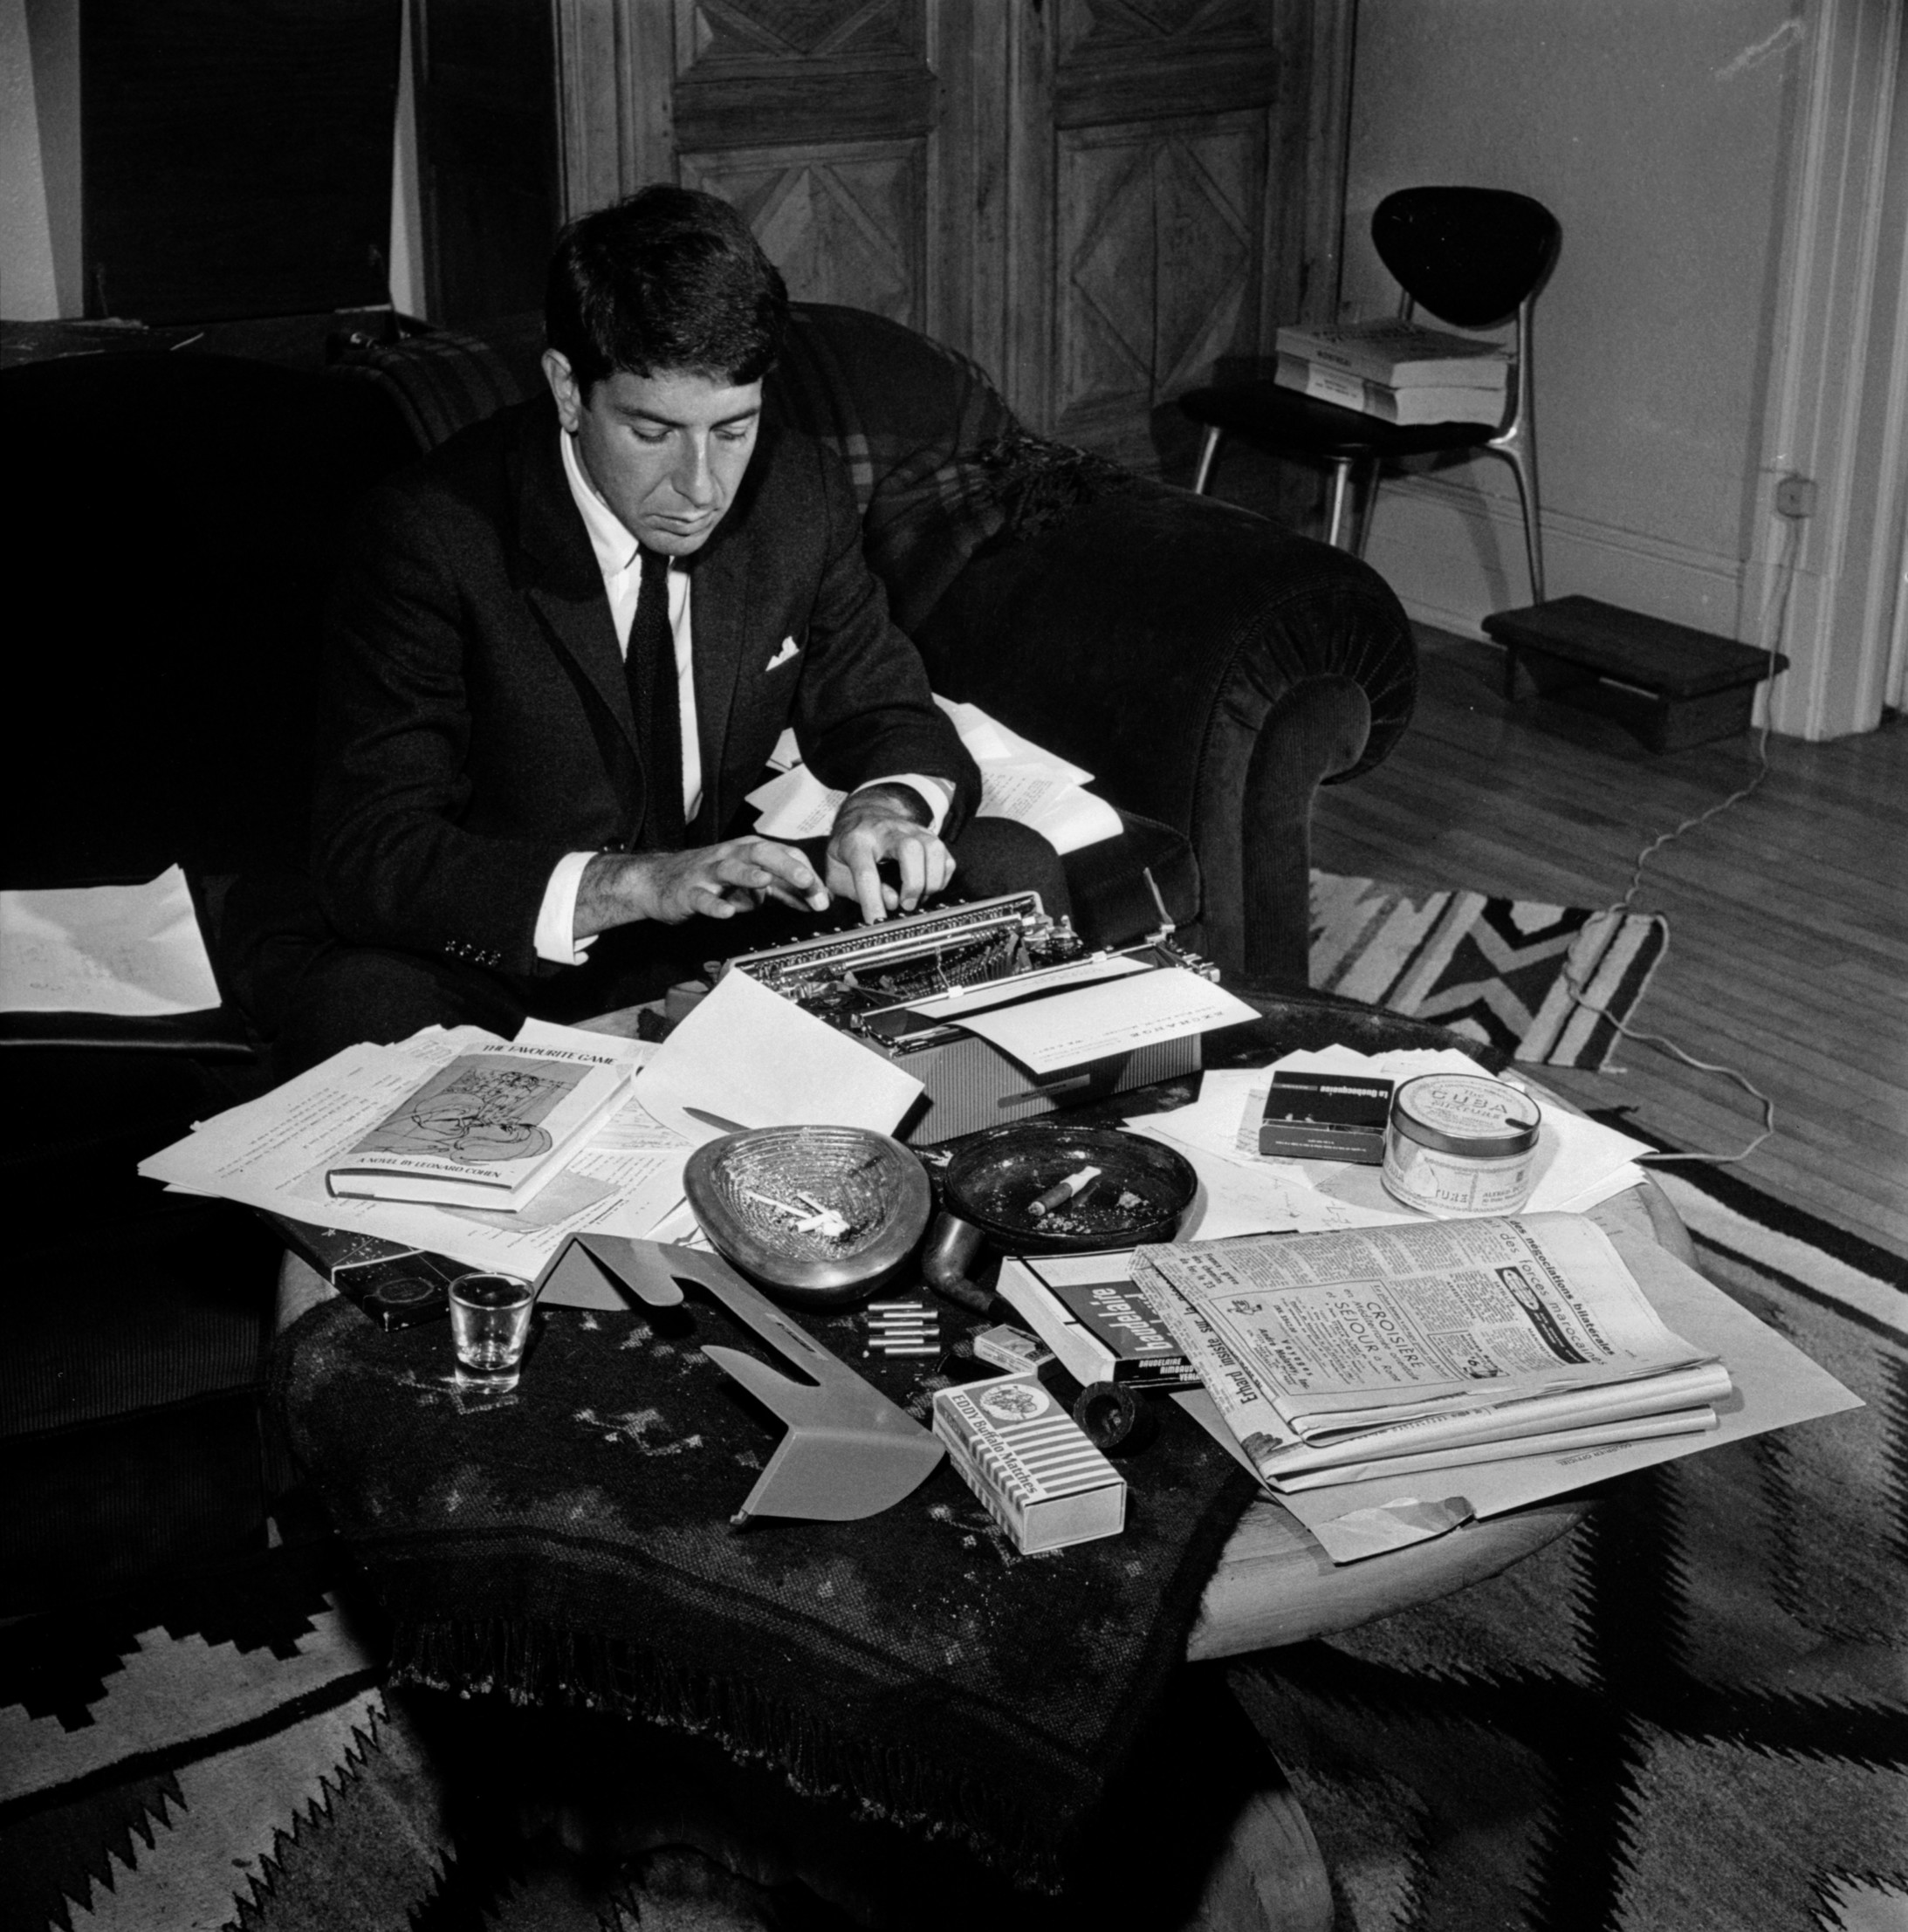 Leonard Cohen 1963 als Poet. Seine Olivetti-Schreibmaschine war ebenso sein Markenzeichen wie später die Gitarre - und natürlich der Anzug. Das Bild stammt aus dem Band: Leonard Cohen, almost young, Eine Bildbiographie mit einem Text von Jens Sparschuh, Schirmer/Mosel 2014. - Dieses Buch ist ein "must have". Foto: Allan R. Leishman